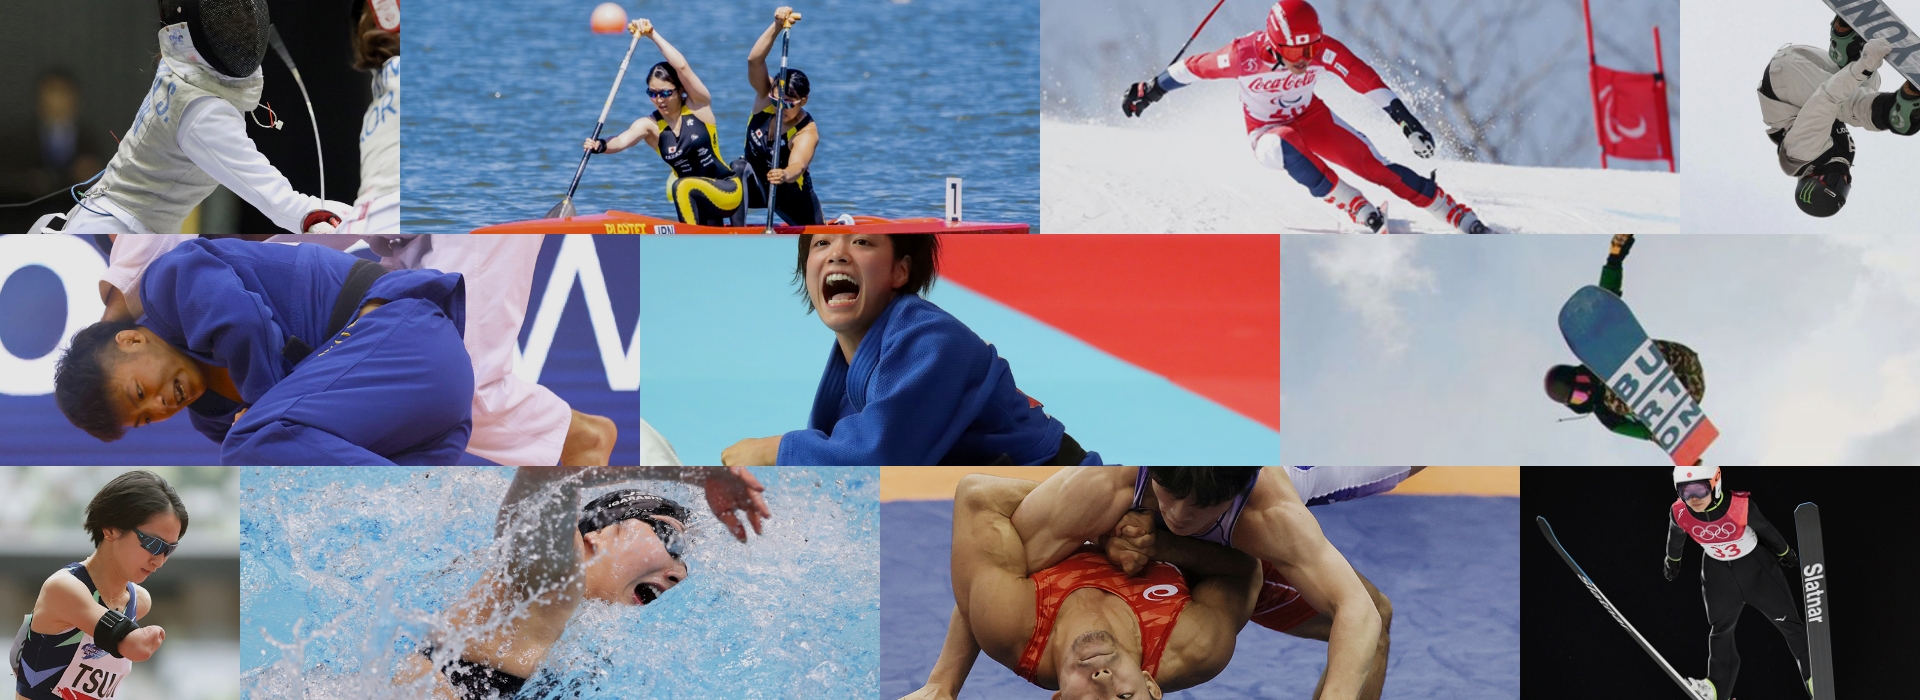 Olympics and Paralympics